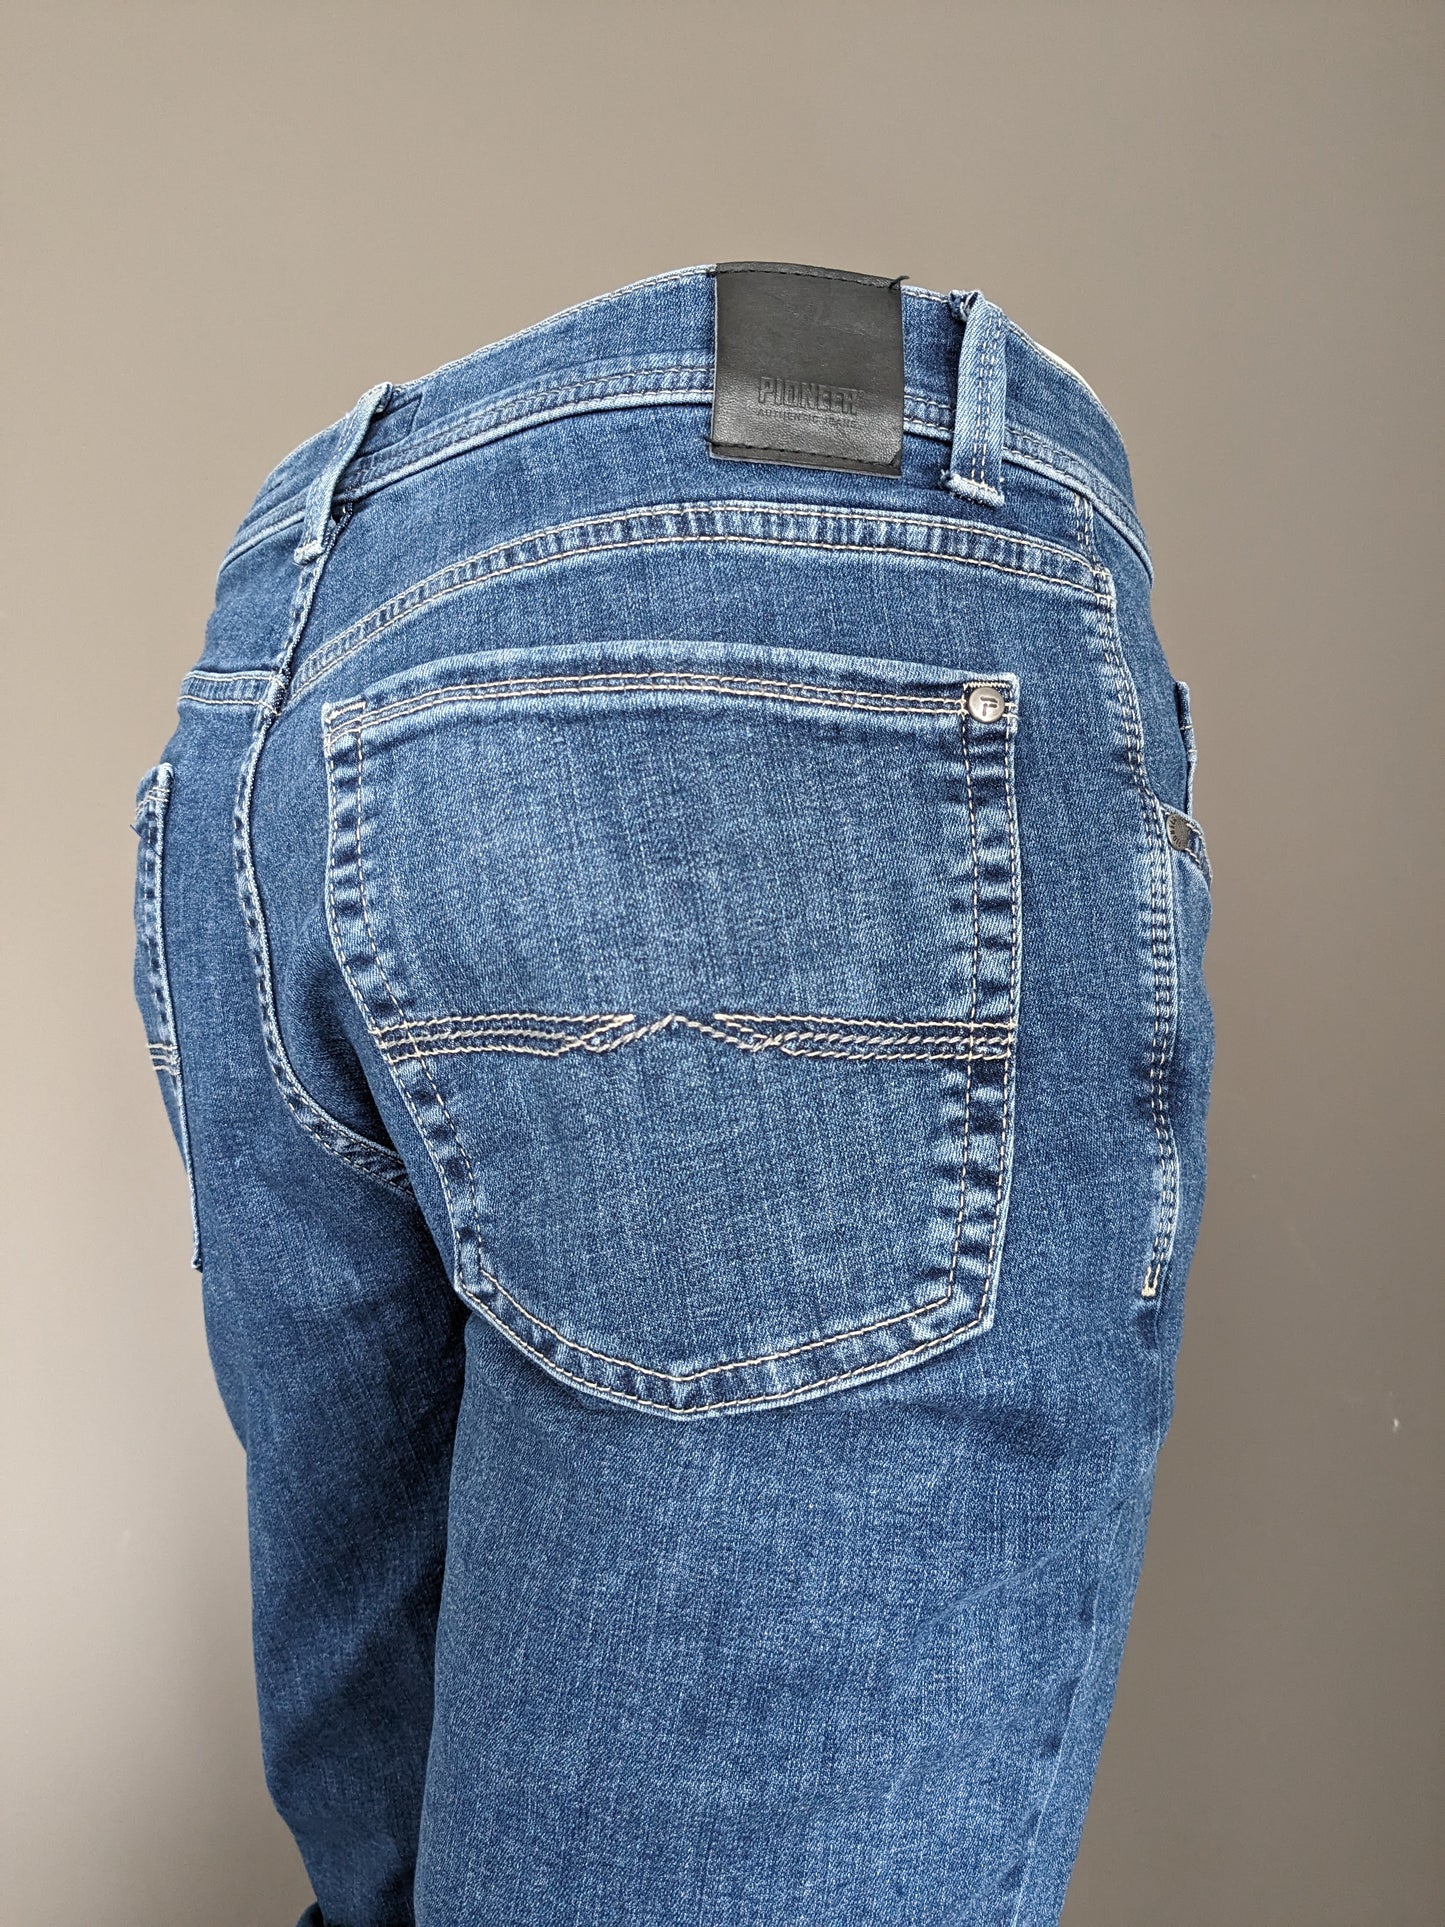 Jeans pionieristici. Colorato blu. Size W33 - L30. Mega flex. Digita Rando. stirata.